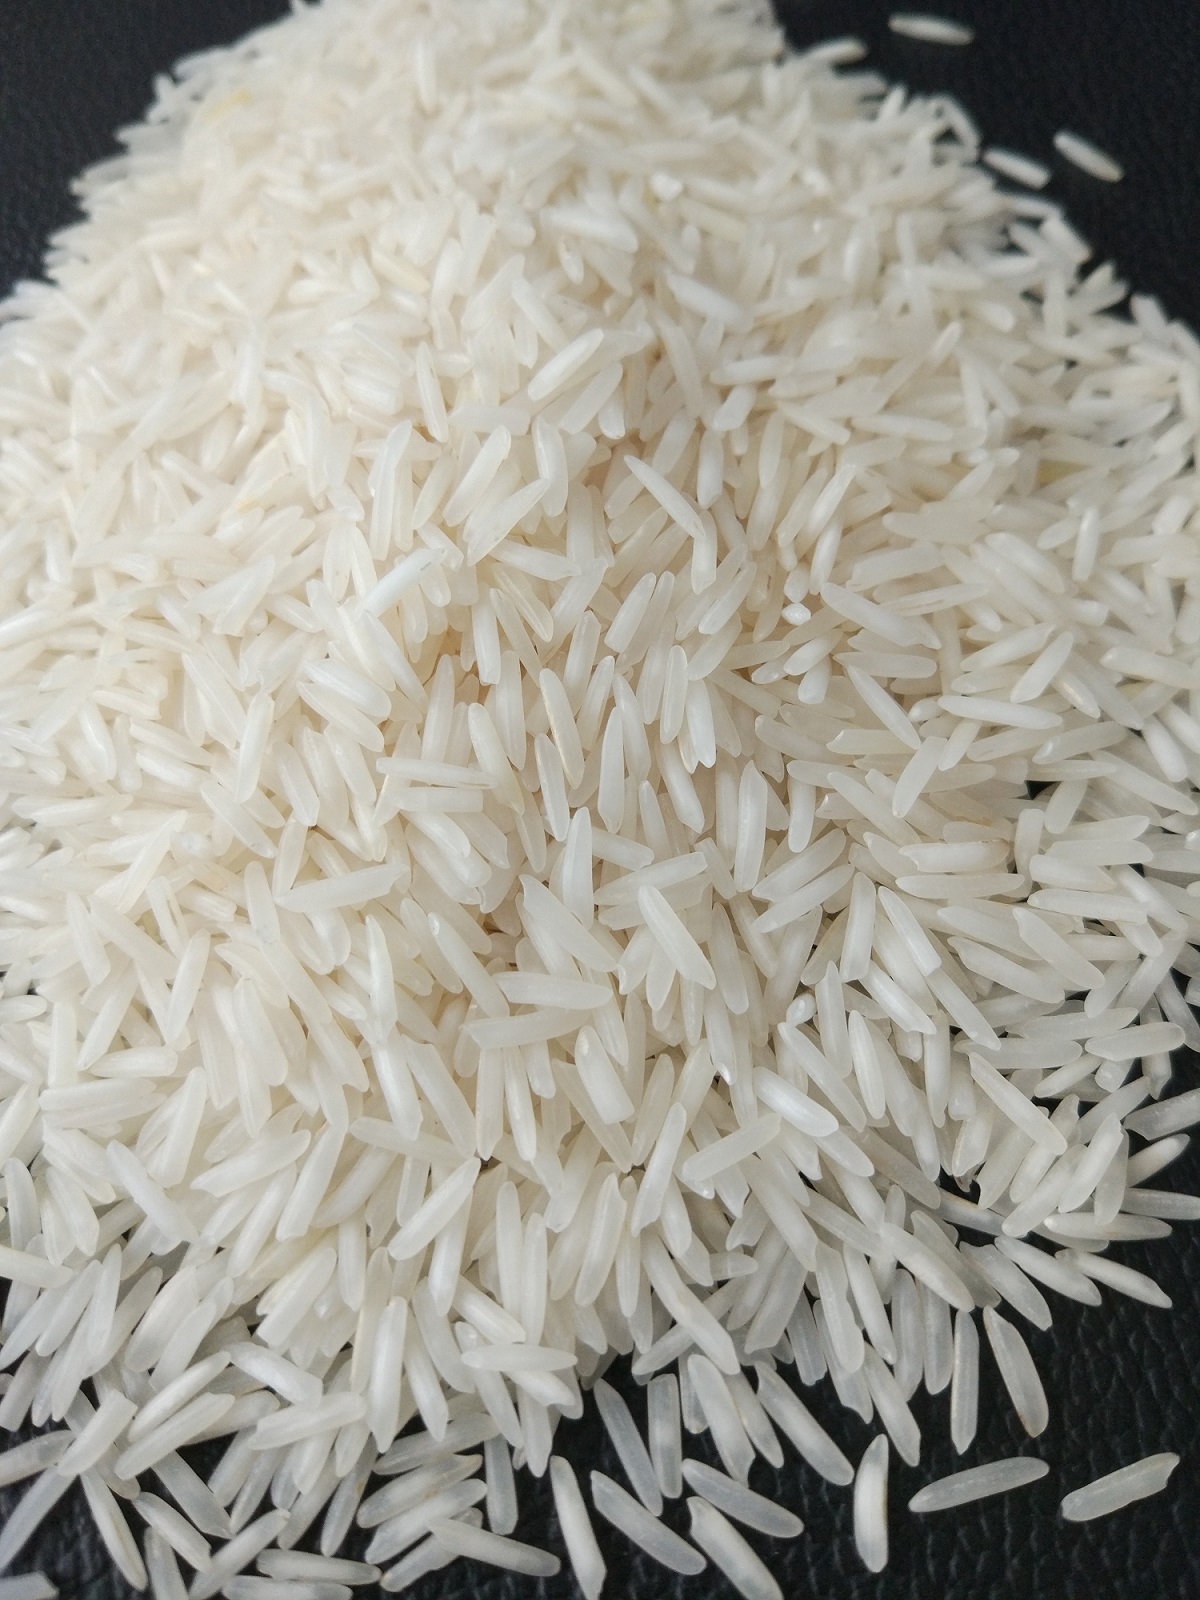 四川酒业集团常年购大米 碎米